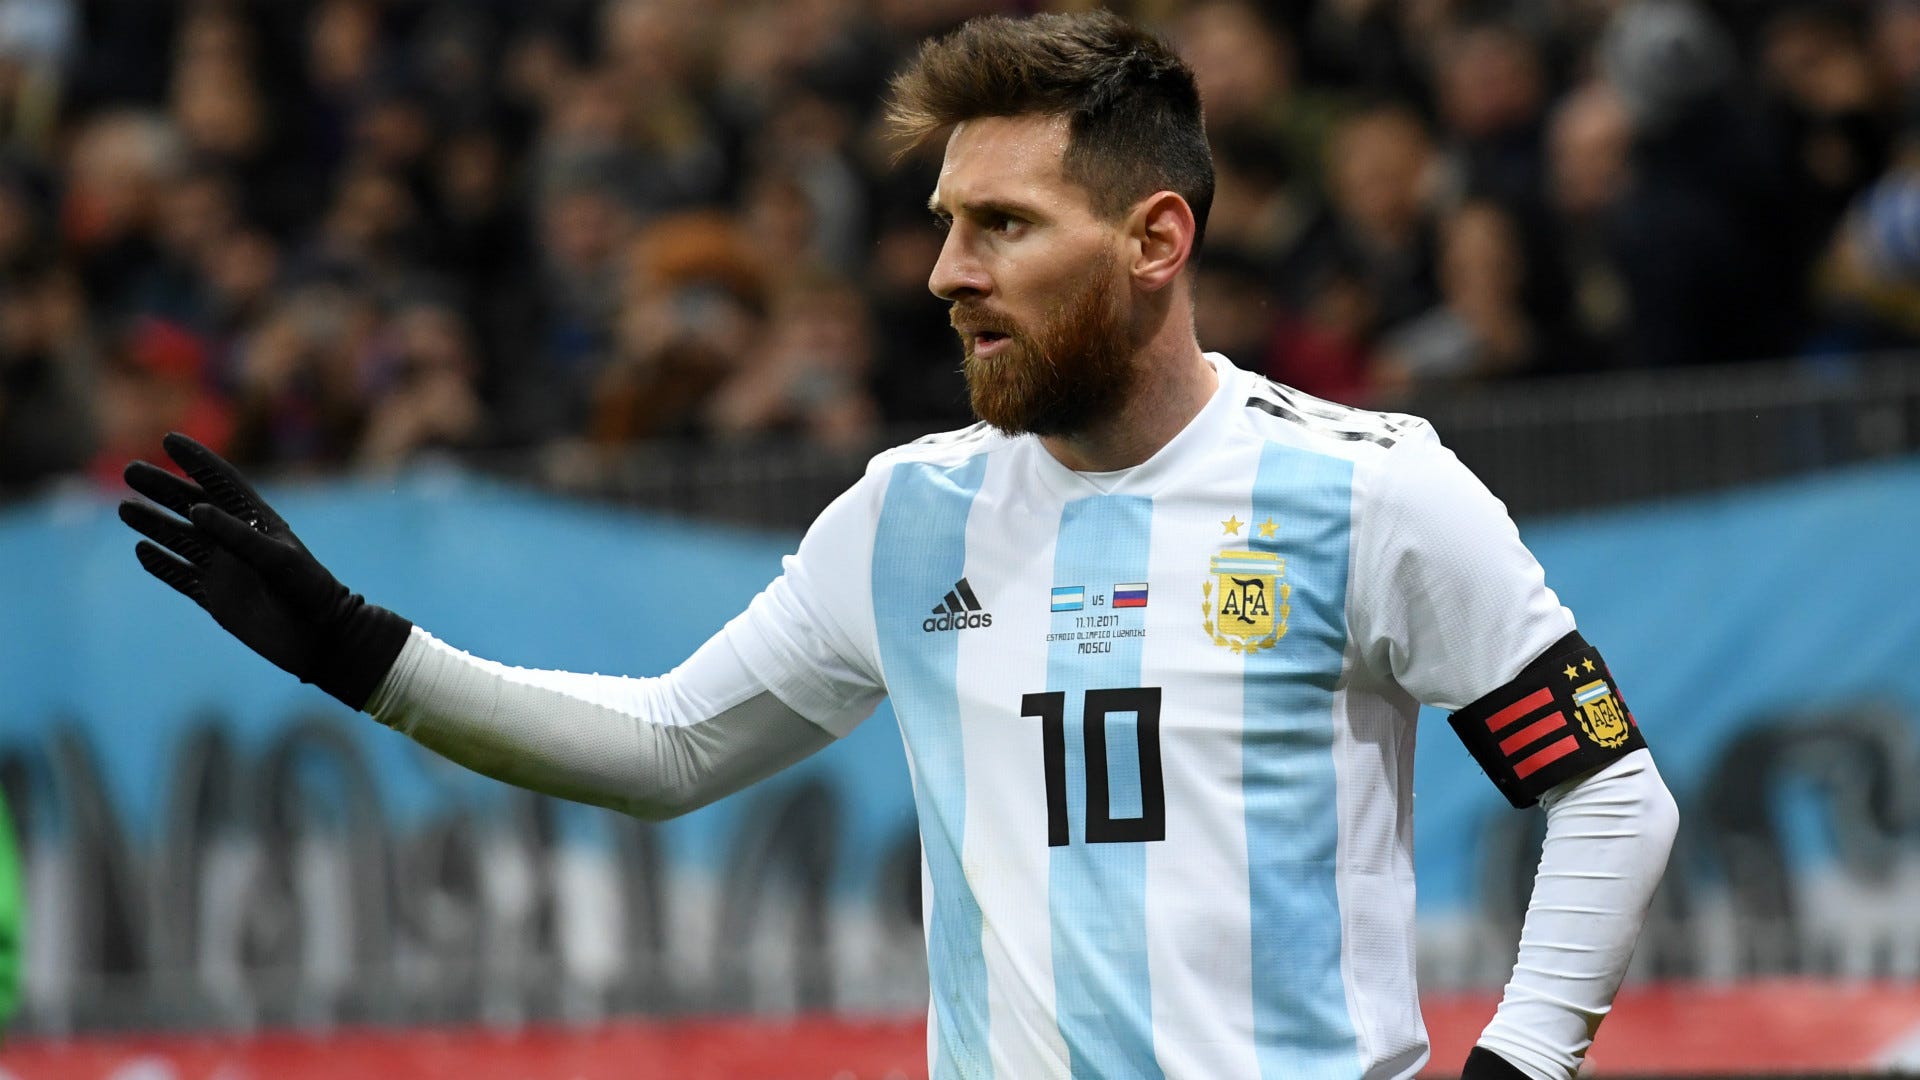 Thế giới đang rộn ràng với World Cup đang diễn ra. Nhưng hãy dừng lại một chút và chiêm ngưỡng hình ảnh của Messi trong những trận đấu năm nào. Đó chính là lí do tại sao anh ấy đã trở thành huyền thoại của bóng đá.